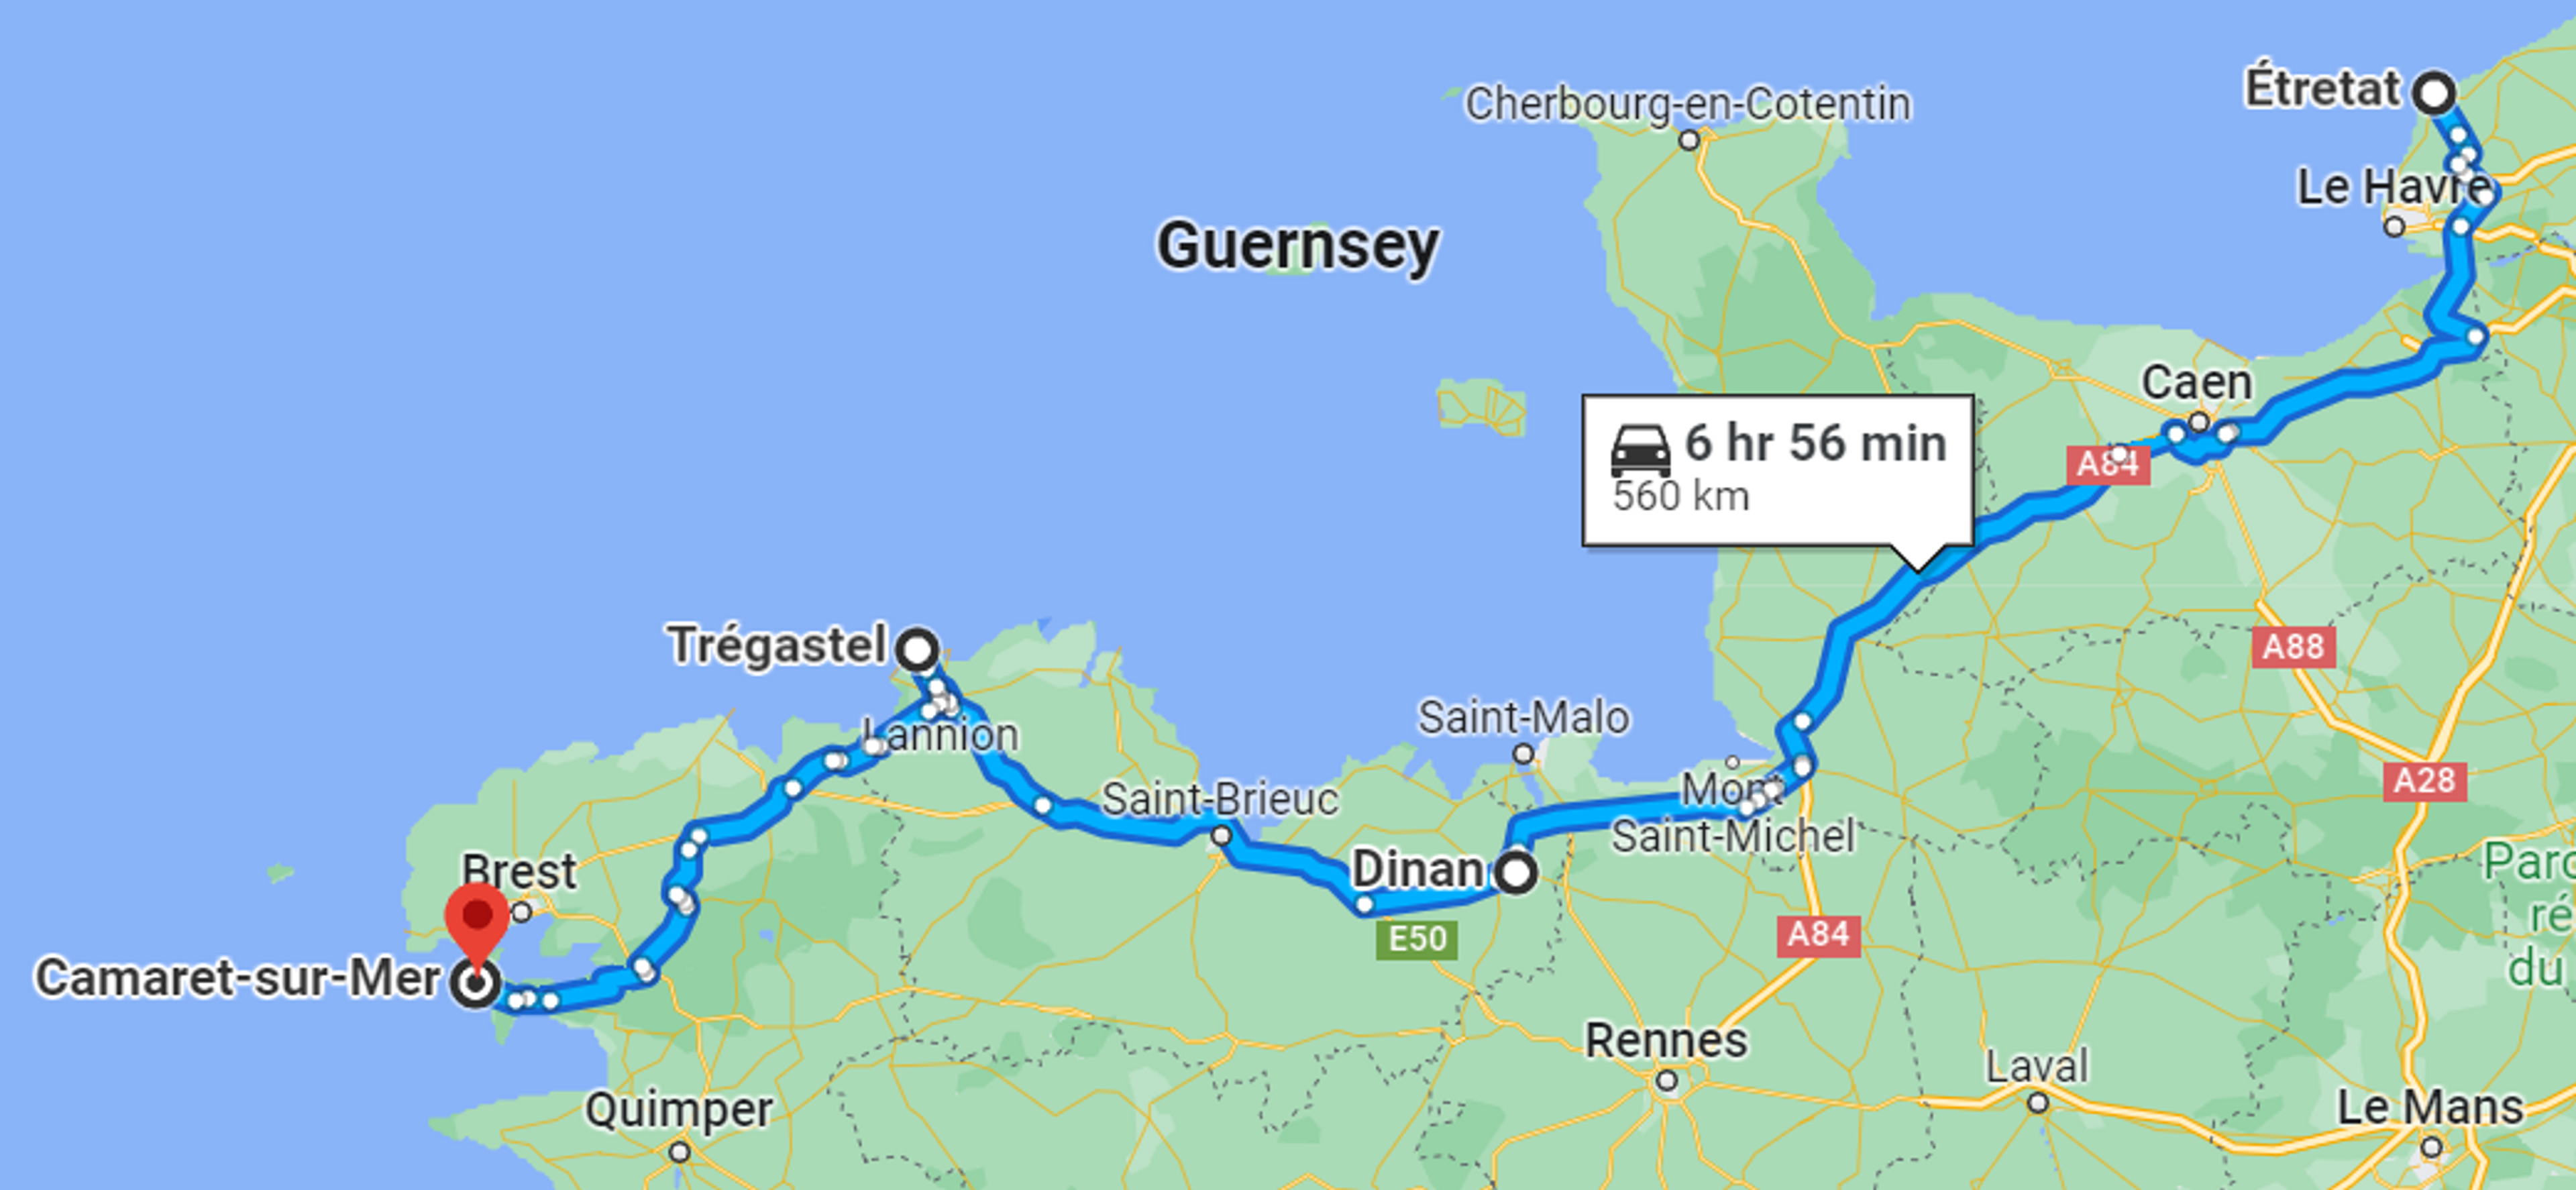 Kartenübersicht der Normandietour entlang des Ärmelkanals von Etretat bis Camaret sur Mer.